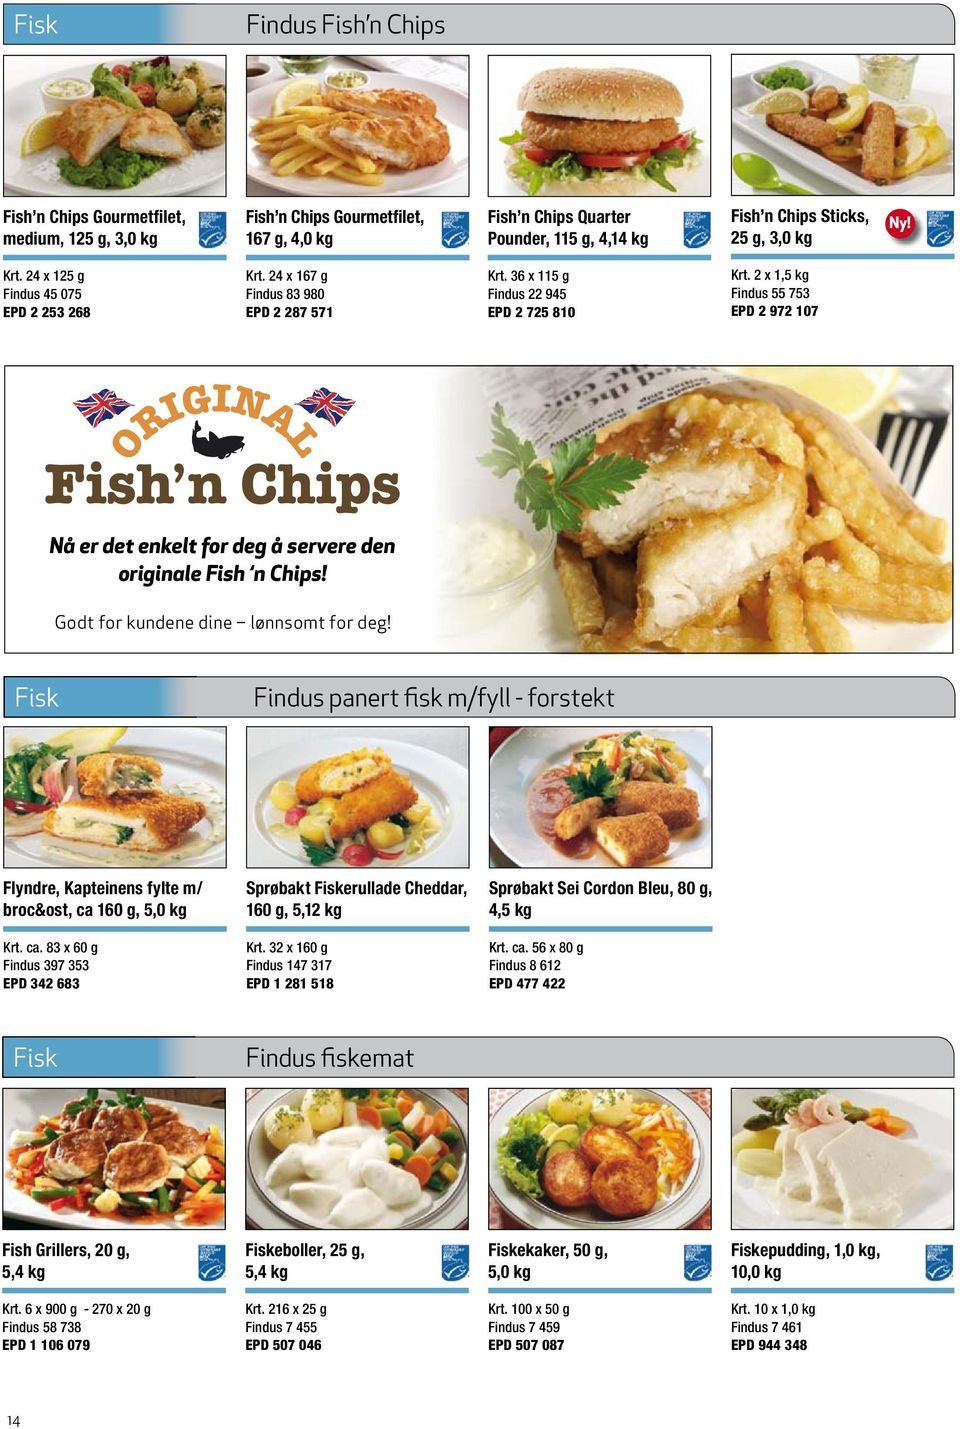 2 x 1,5 kg Findus 55 753 EPD 2 972 107 Nå er det enkelt for deg å servere den originale Fish n Chips! Godt for kundene dine lønnsomt for deg!